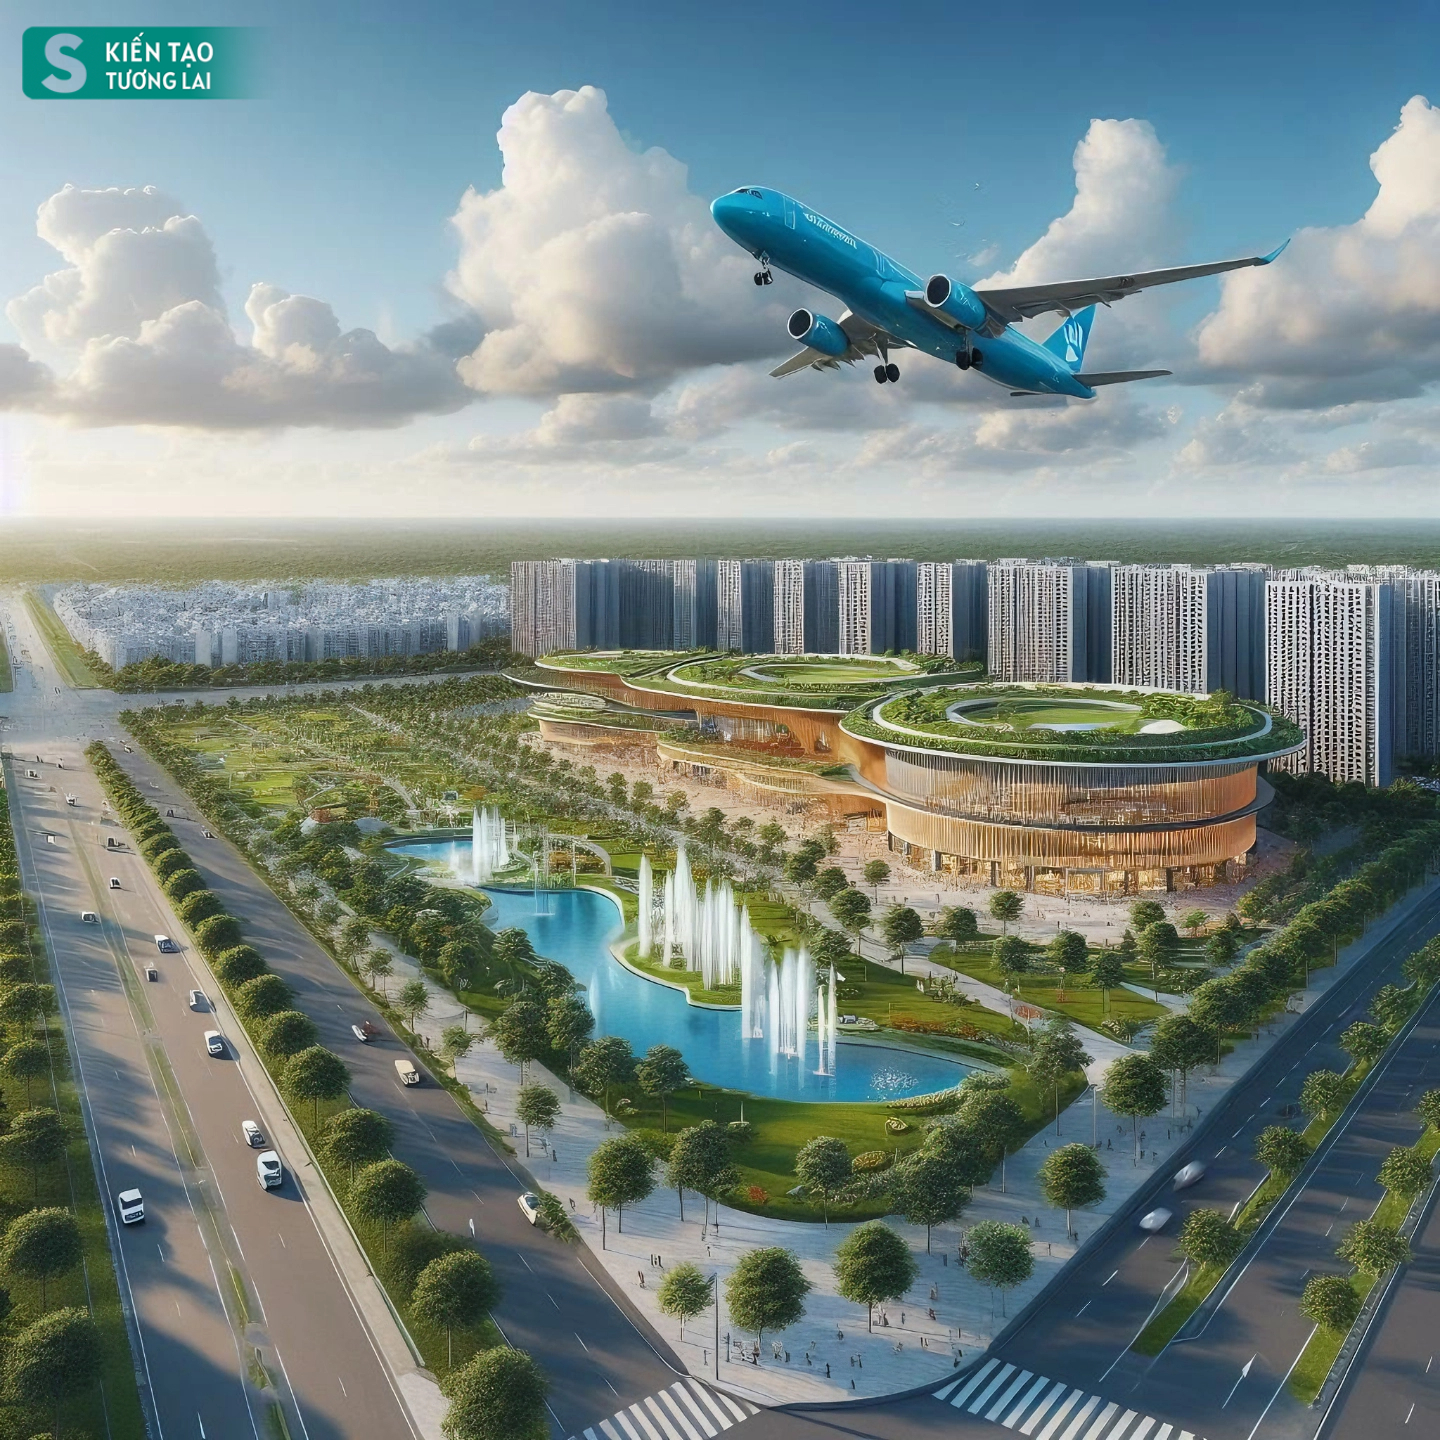 Choáng ngợp với viễn cảnh hiện đại của thành phố mới cạnh sân bay 16 tỷ USD lớn nhất Việt Nam- Ảnh 8.